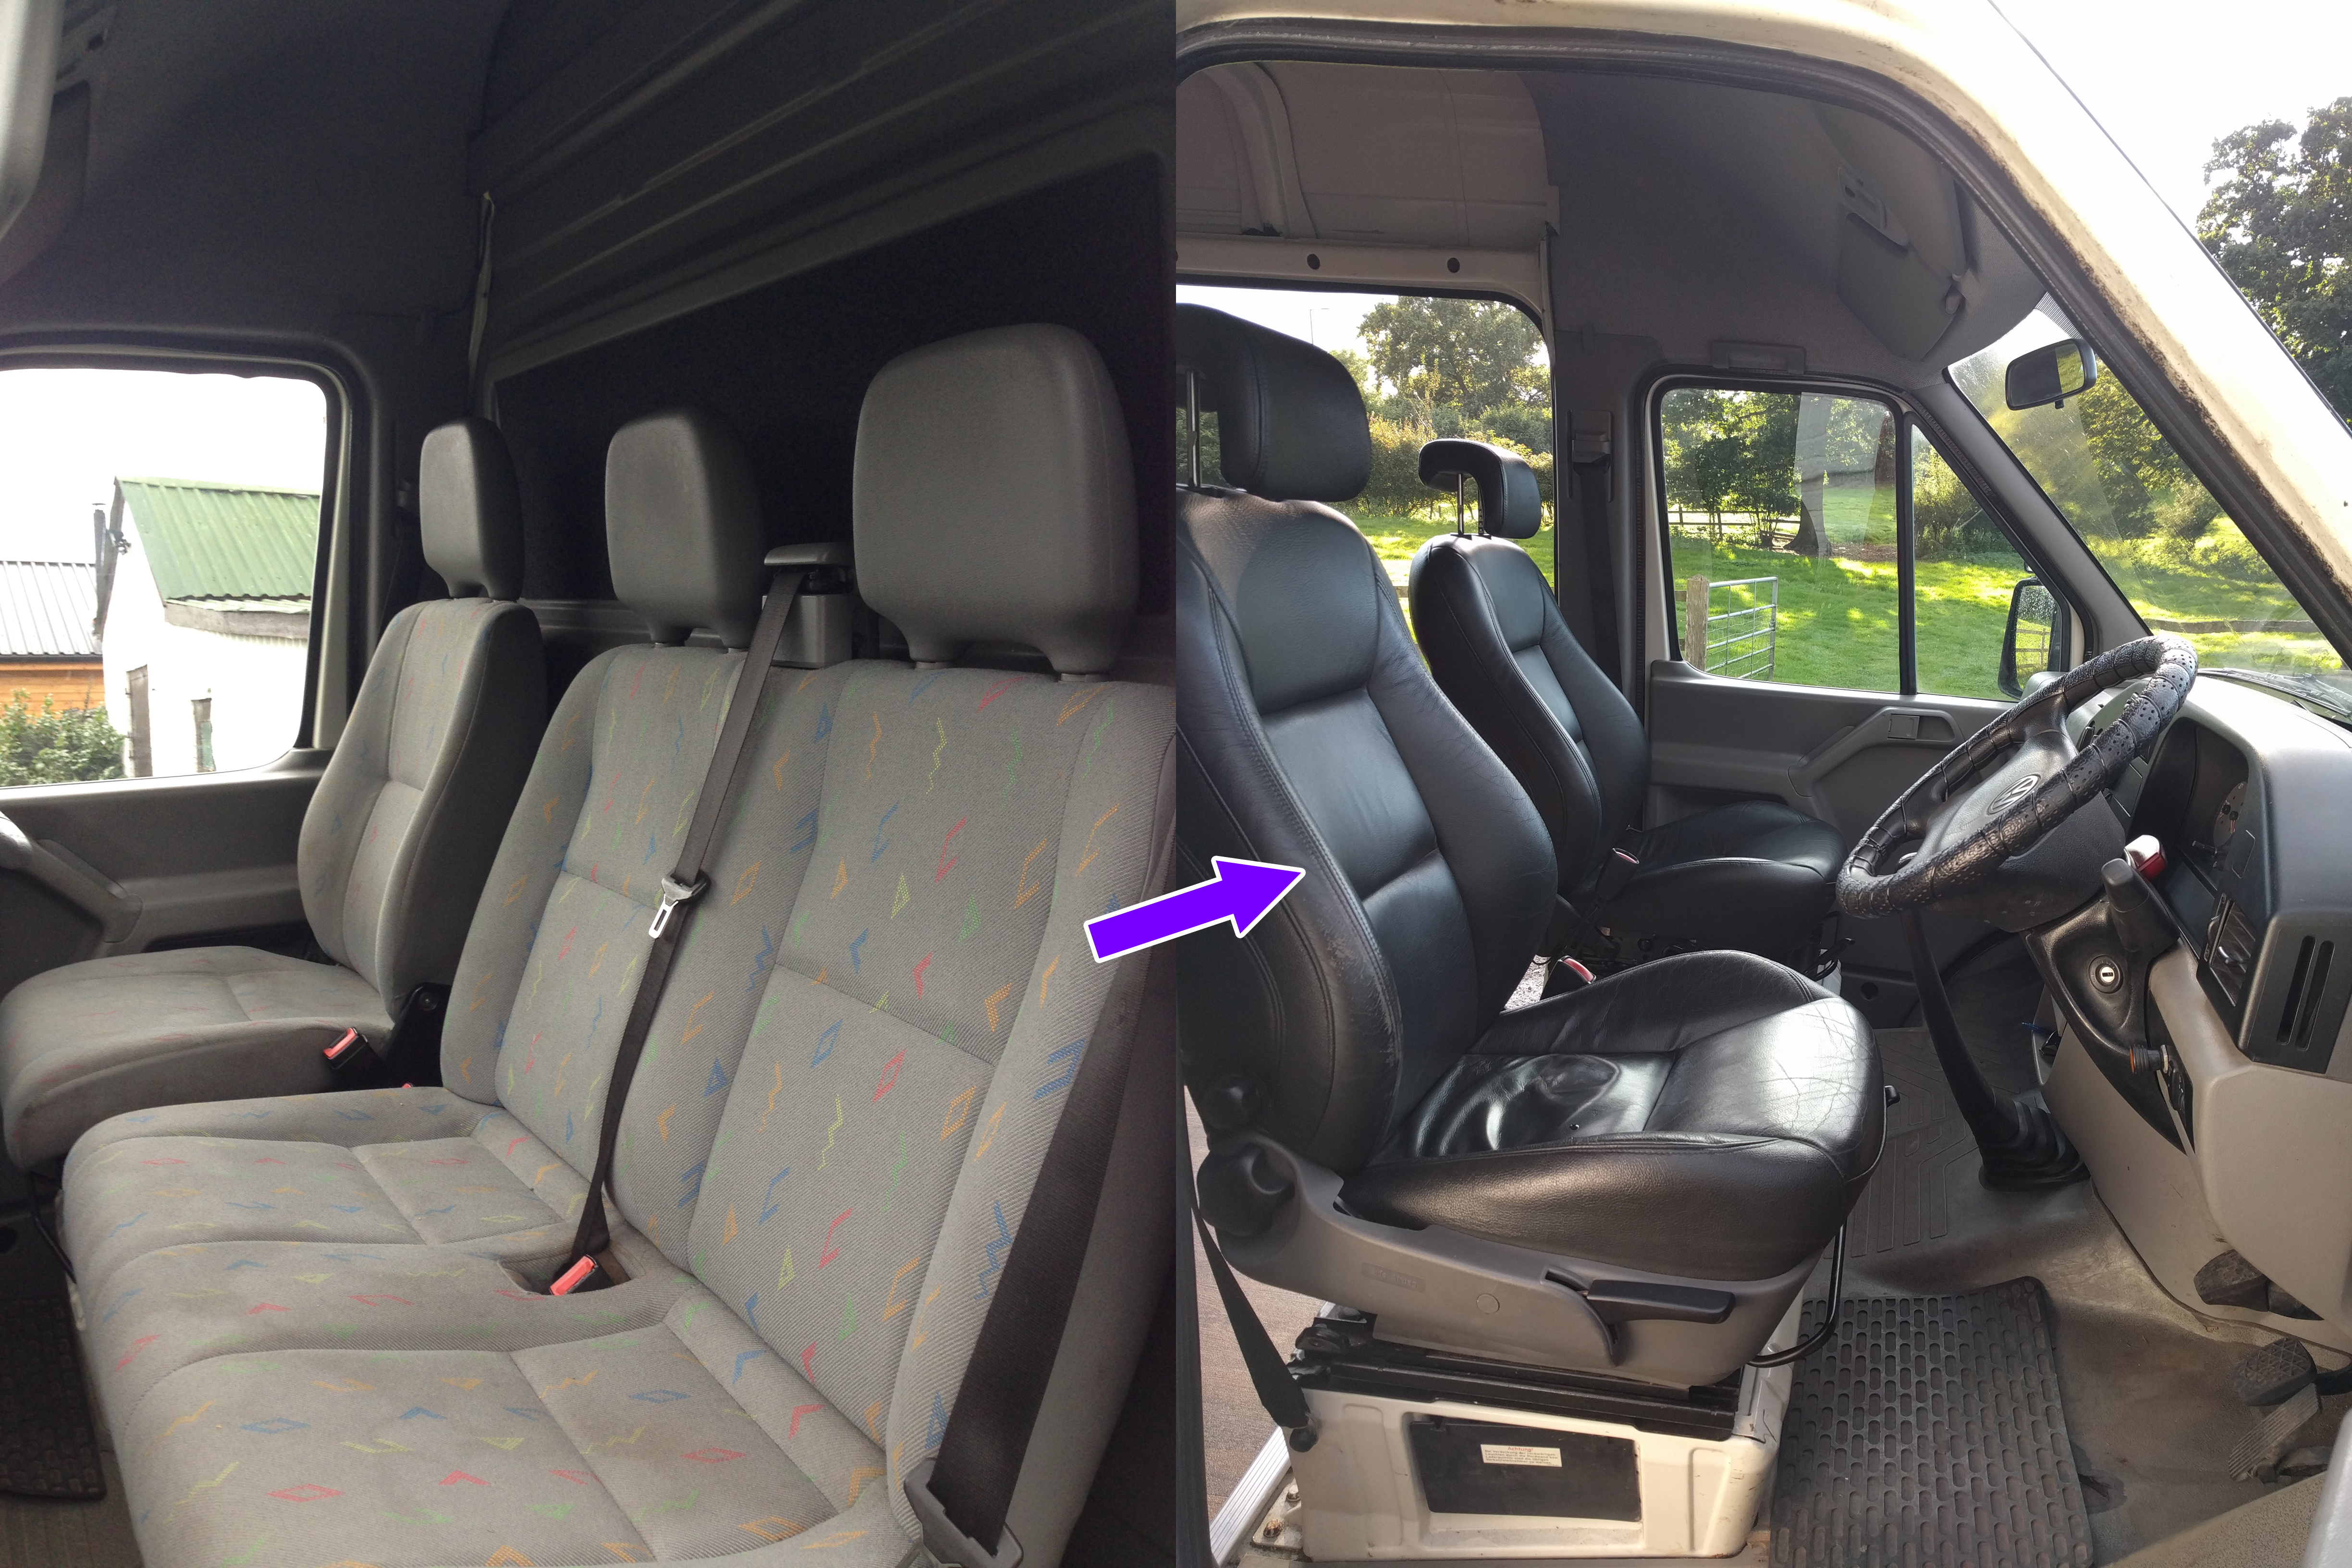 Fitting Swivelling Saab Seats To The Van | Wander Van